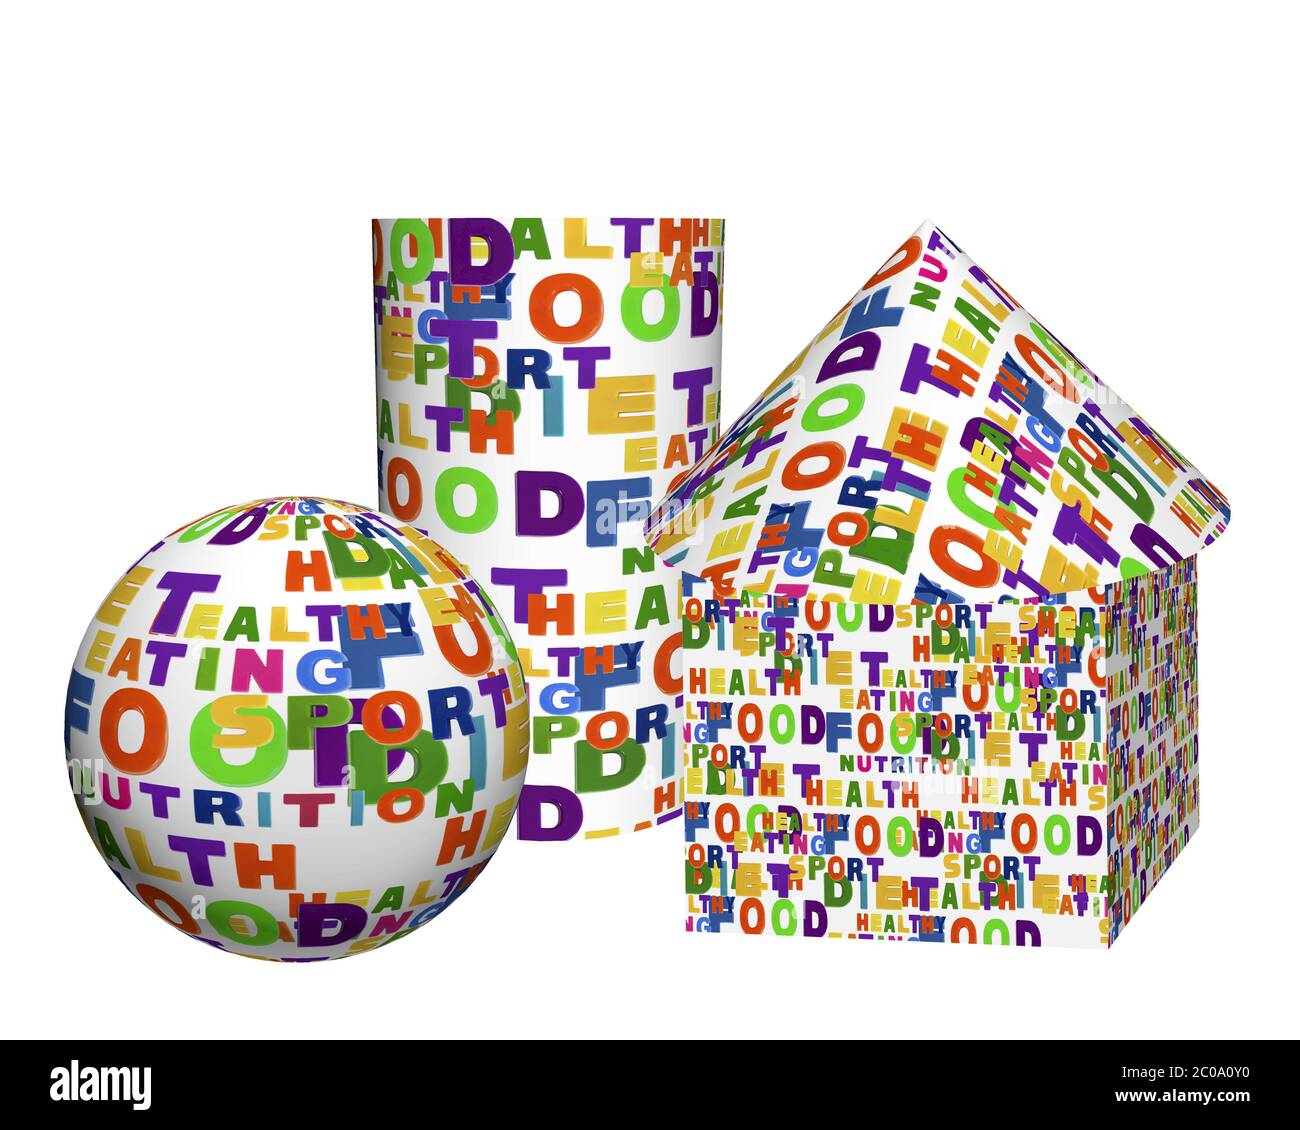 Immagine concettuale di una nuvola di tag, espressa come forme geometriche: Una sfera, una scatola, un cilindro e un cono Foto Stock